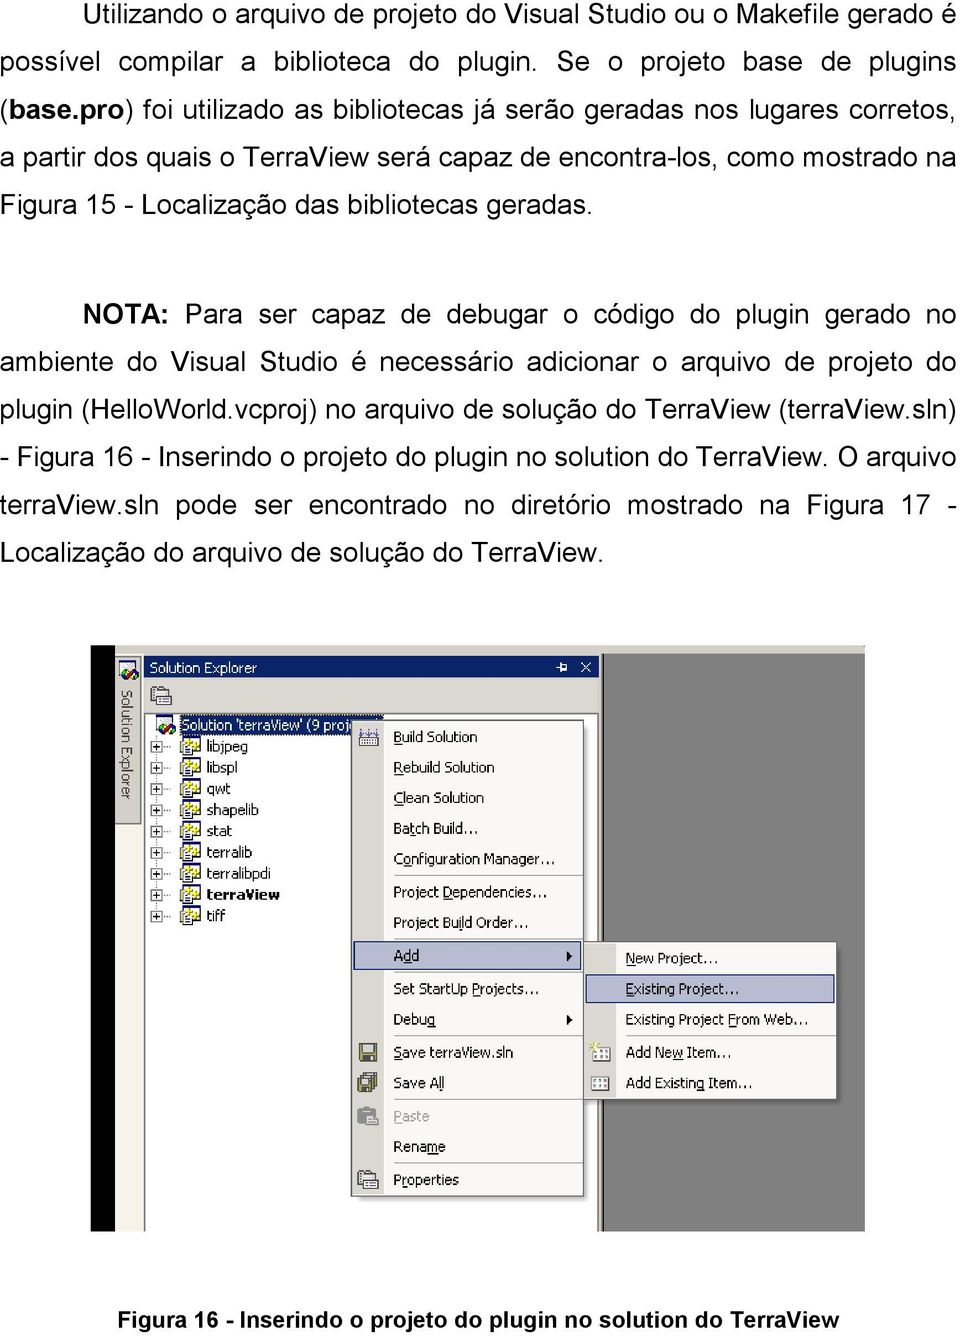 NOTA: Para ser capaz de debugar o código do plugin gerado no ambiente do Visual Studio é necessário adicionar o arquivo de projeto do plugin (HelloWorld.